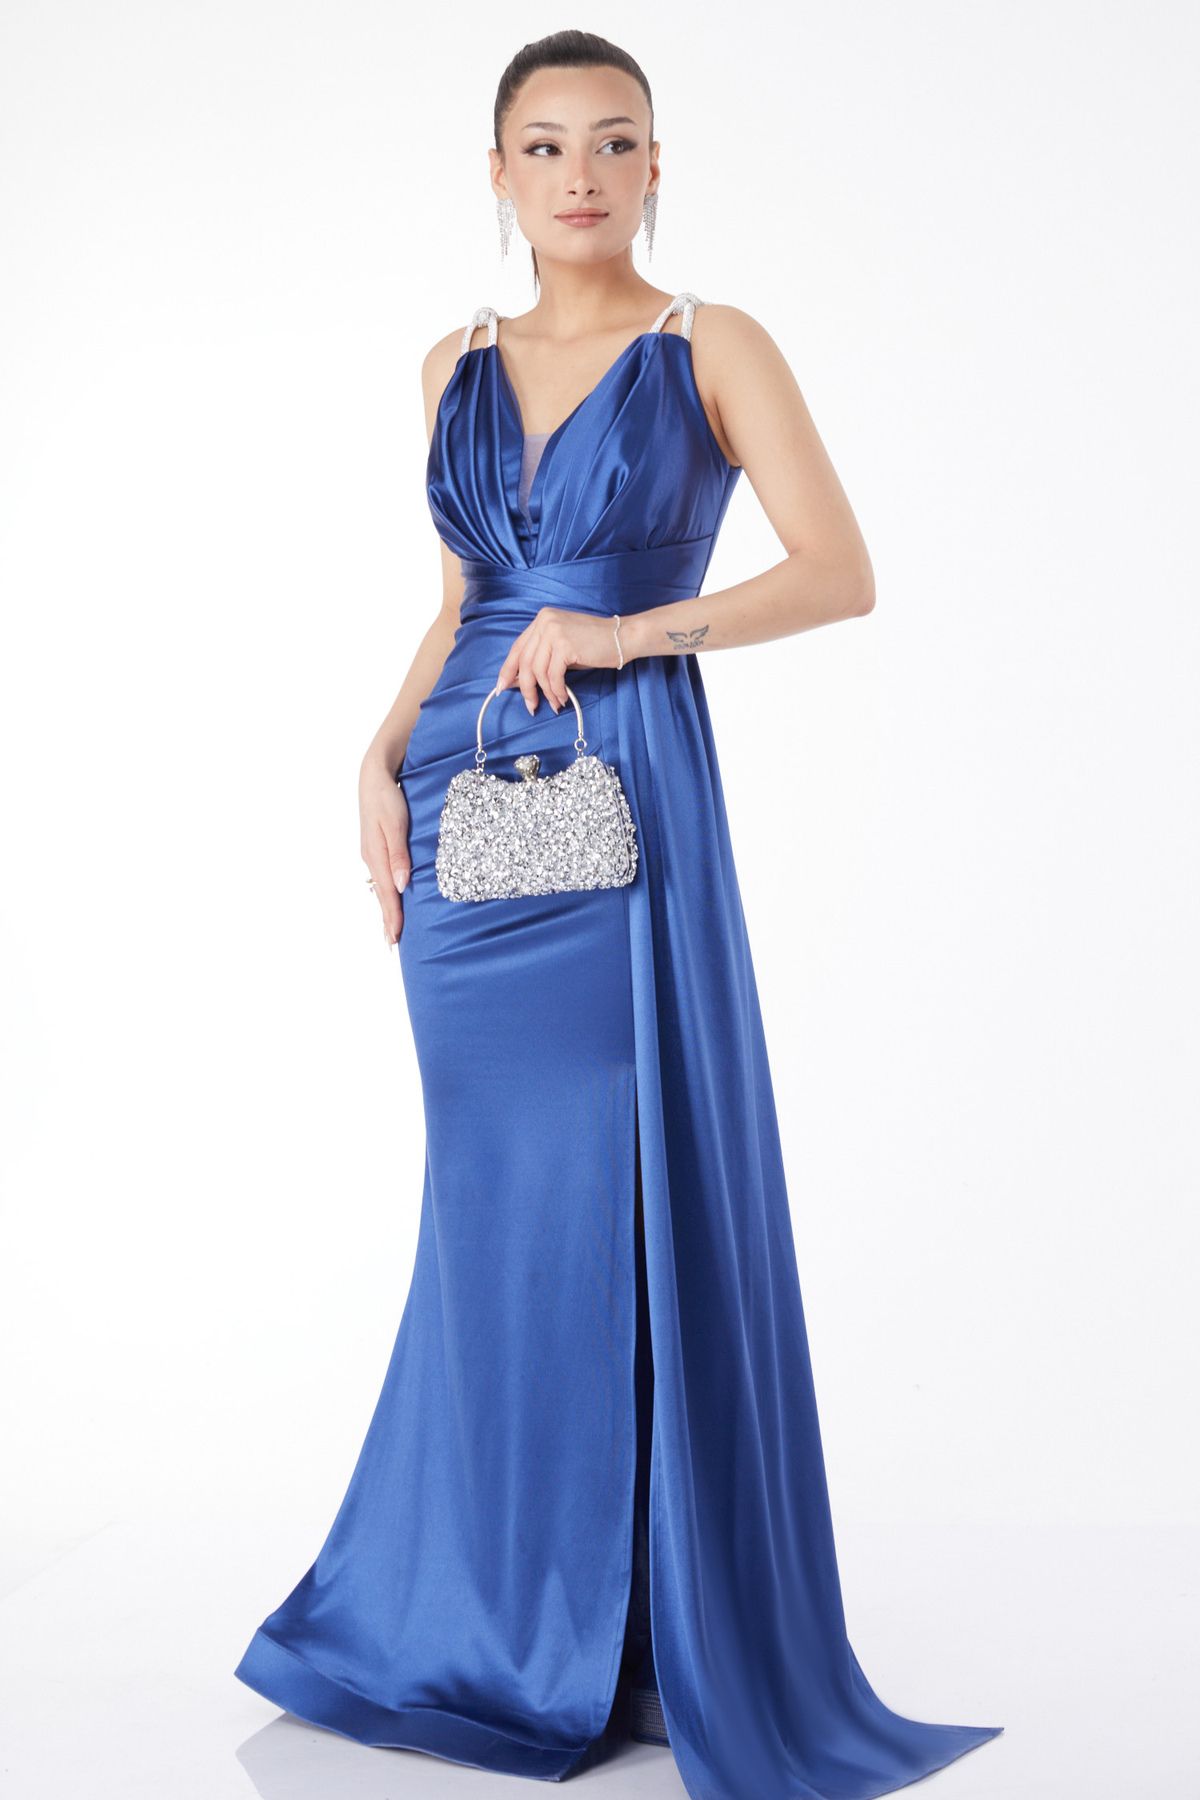 TOFİSA Düz Orta Kadın Mavi Taş Askılı Drape Abiye Elbise - 24589